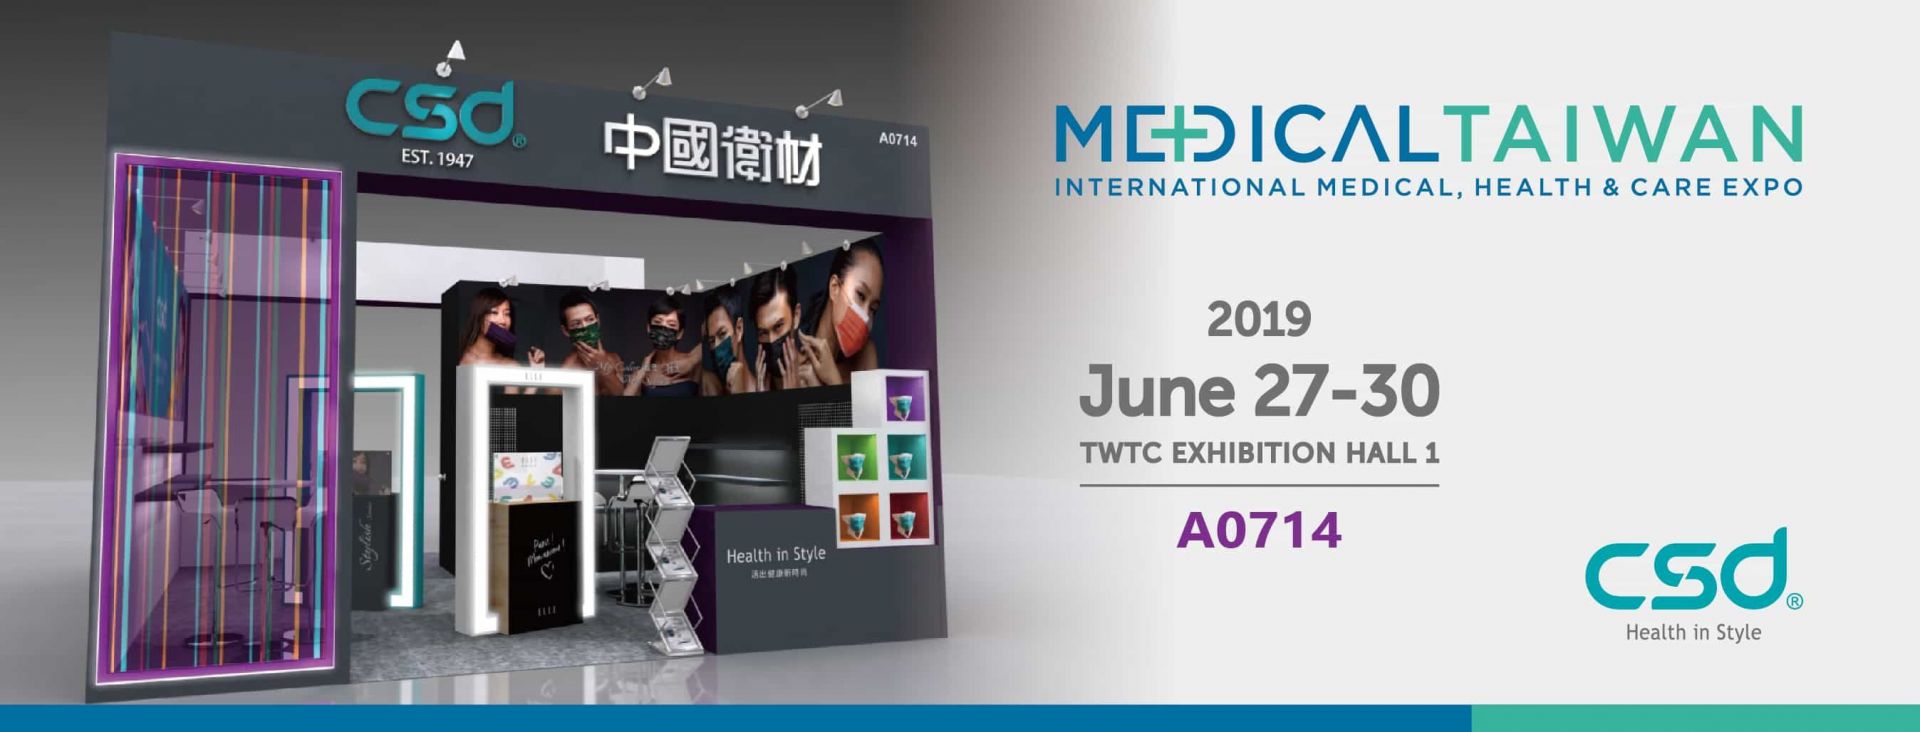 2019 MEDICAL TAIWAN 대만 전문 의료 전시회